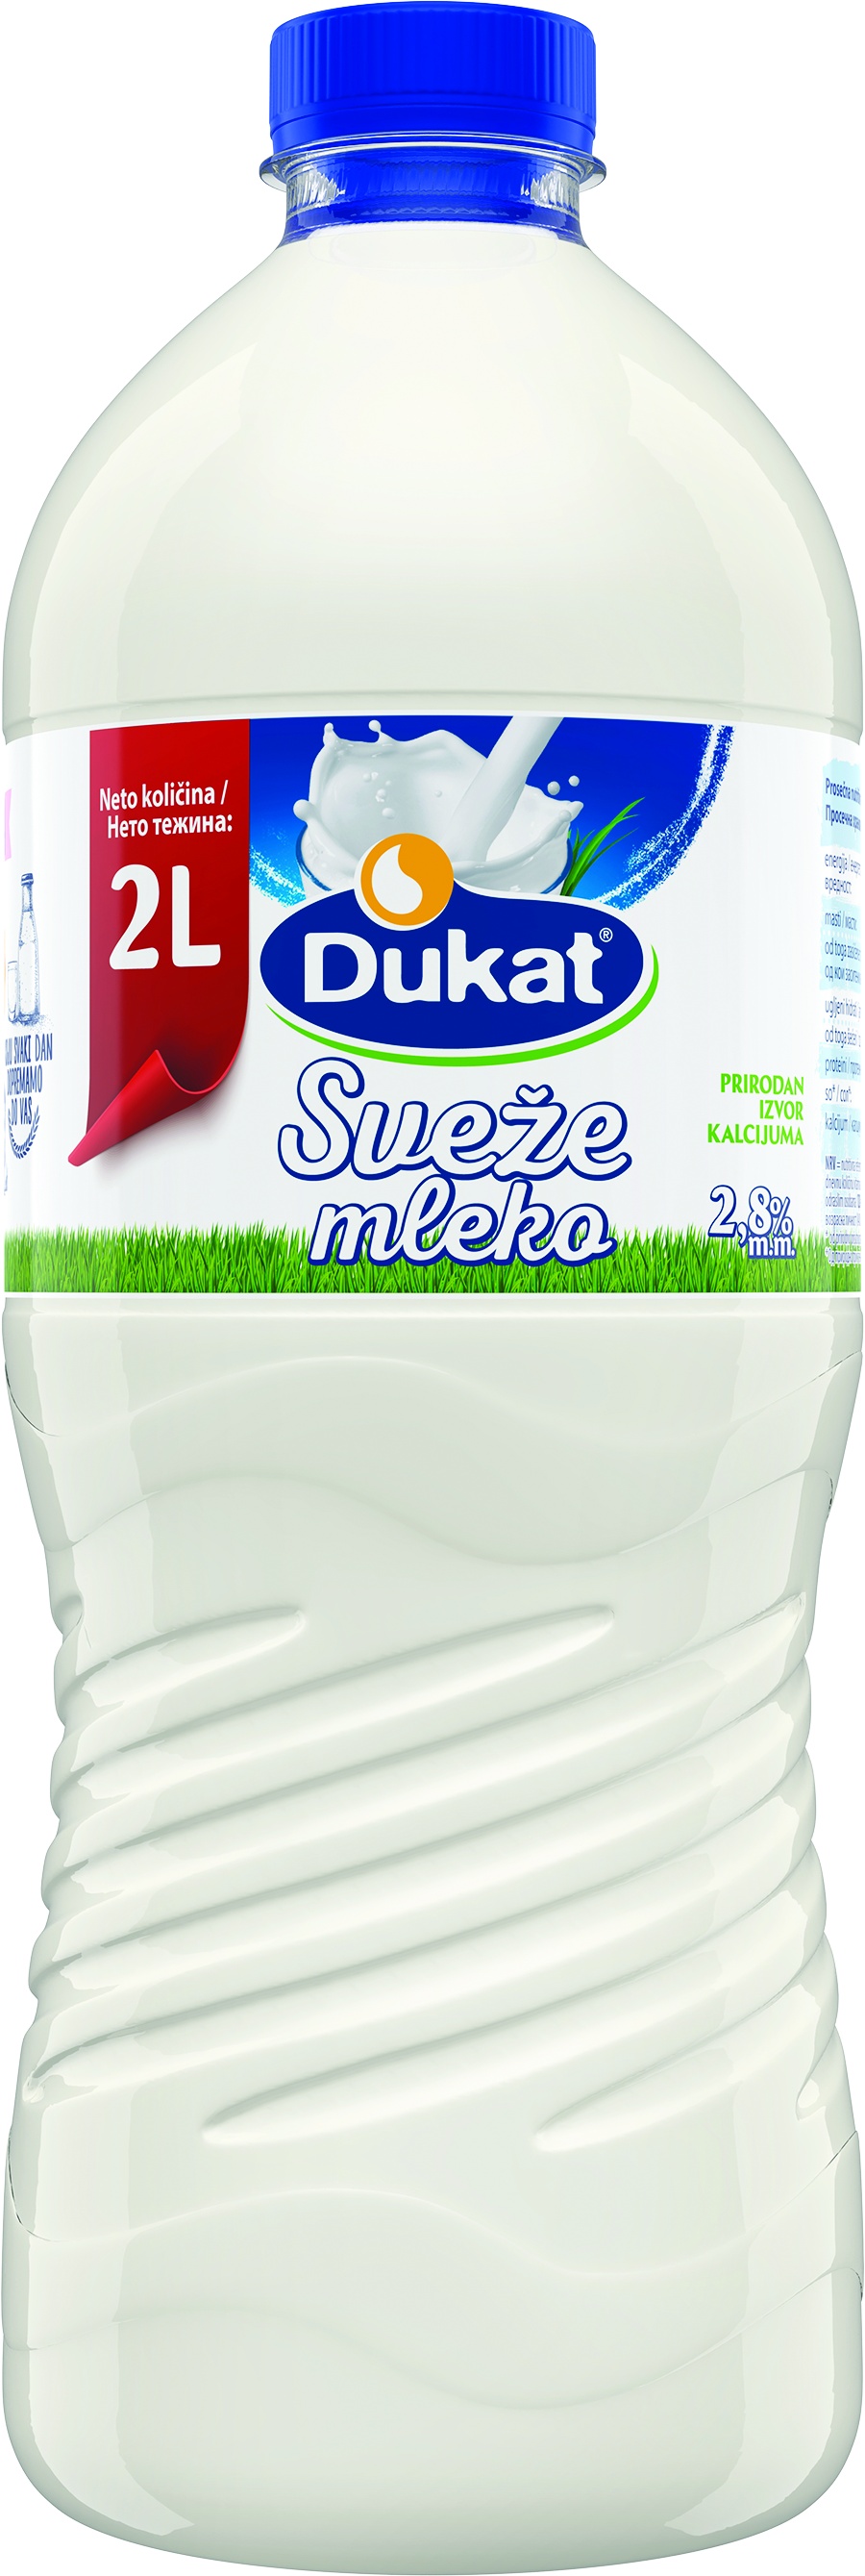 Slika za Mleko sveže 2.8%mm Dukat 2l